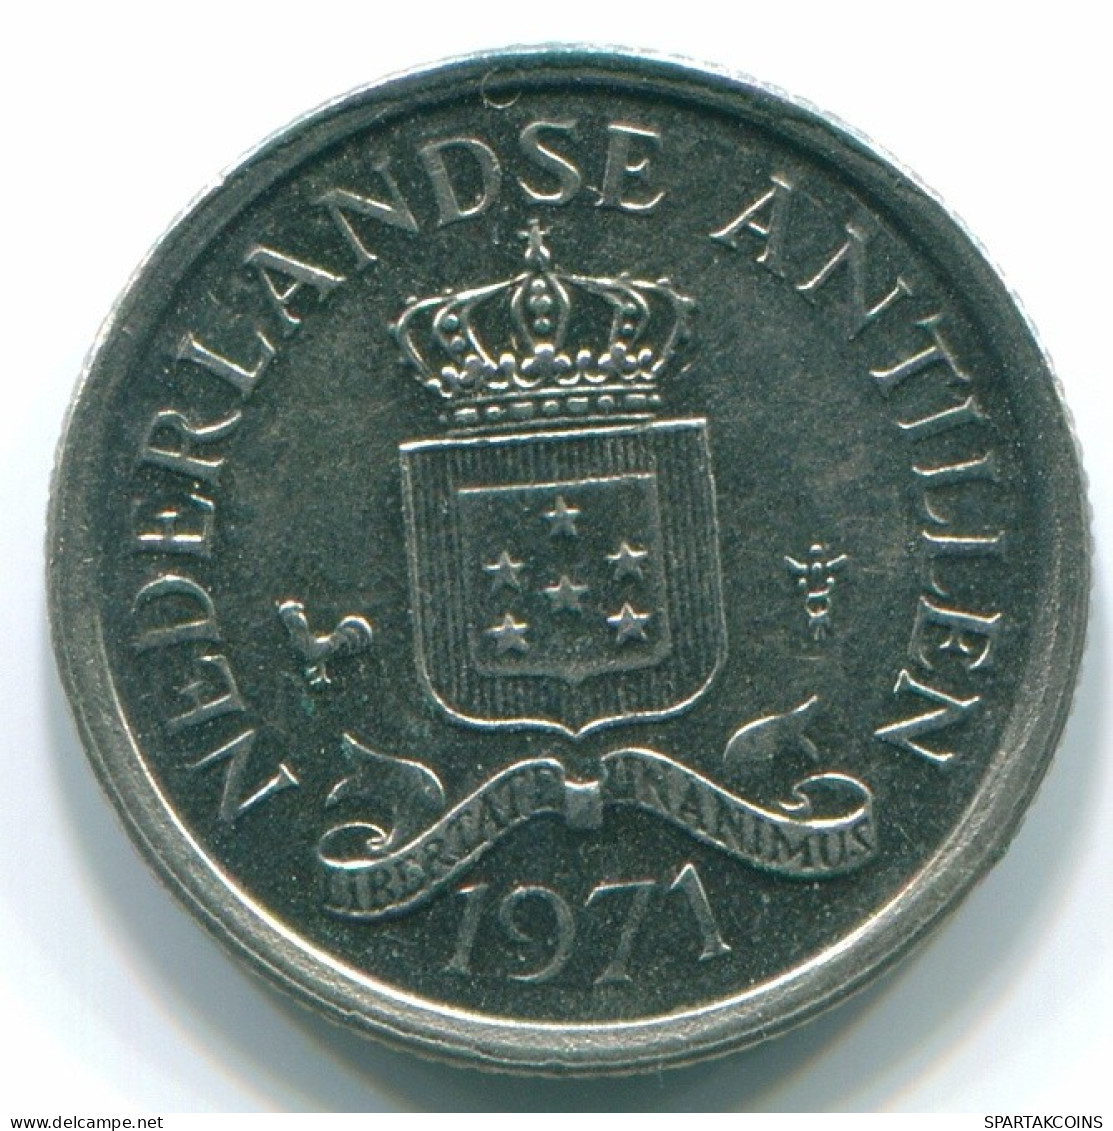 10 CENTS 1971 NIEDERLÄNDISCHE ANTILLEN Nickel Koloniale Münze #S13408.D.A - Antilles Néerlandaises